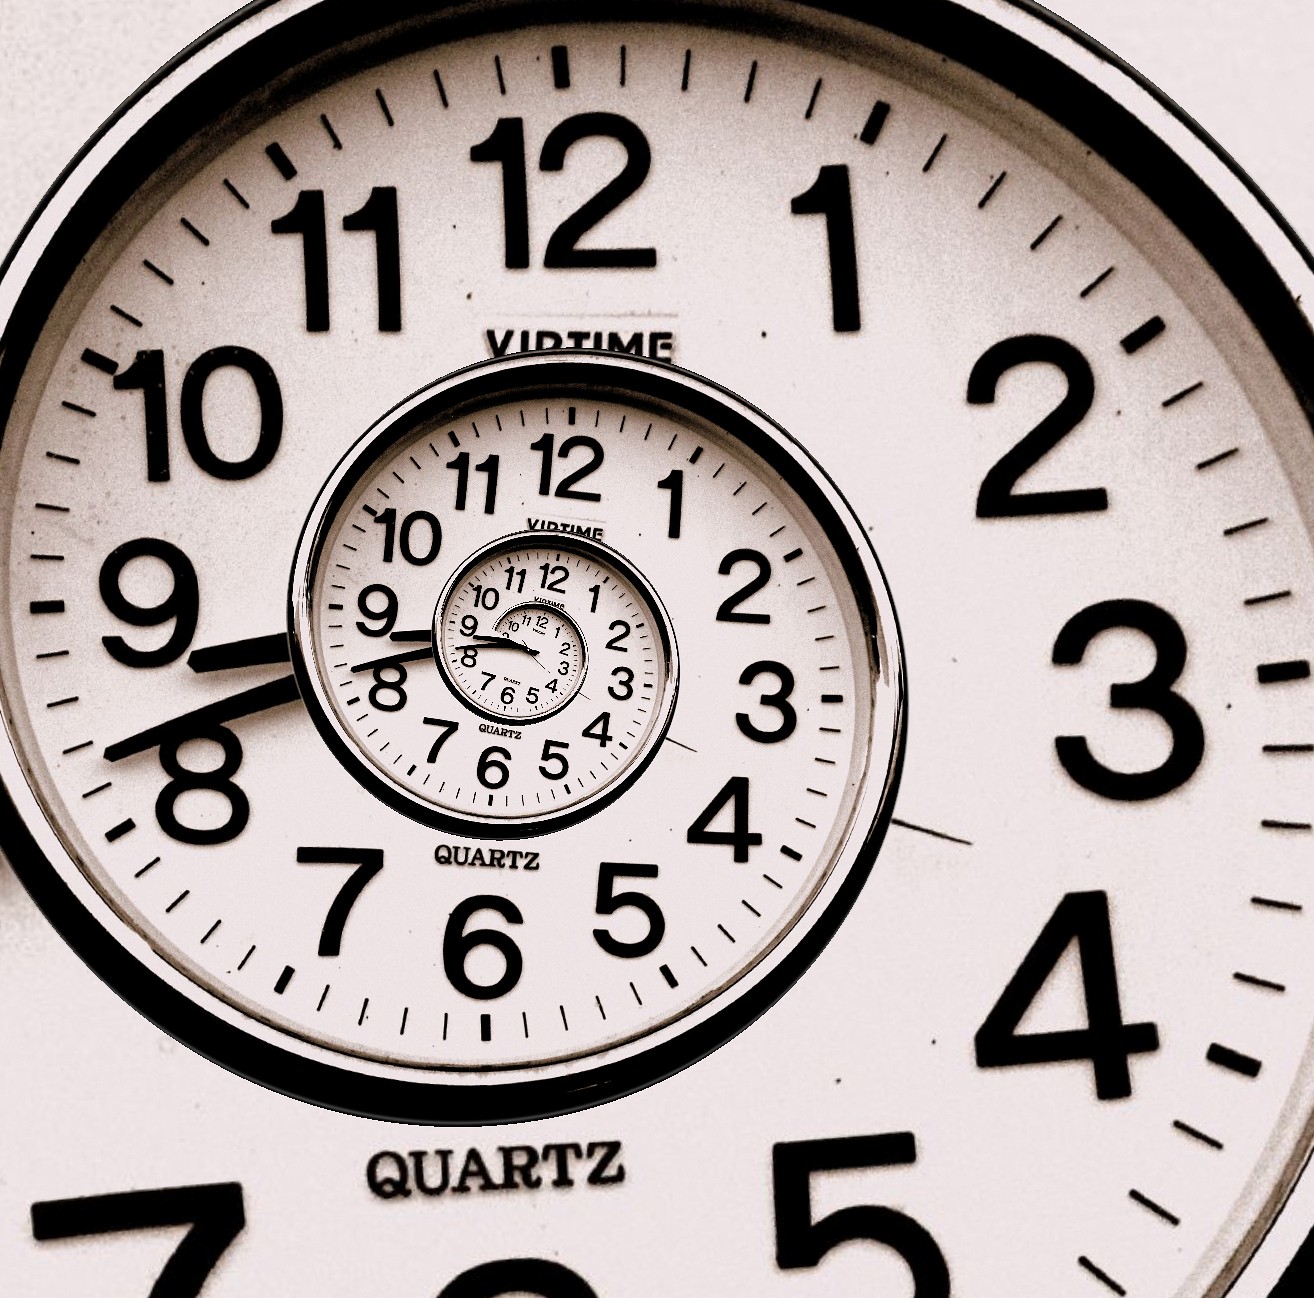 2000 2 часа. Часы. Изображение времени. Время картинки. Высказывания про часы.